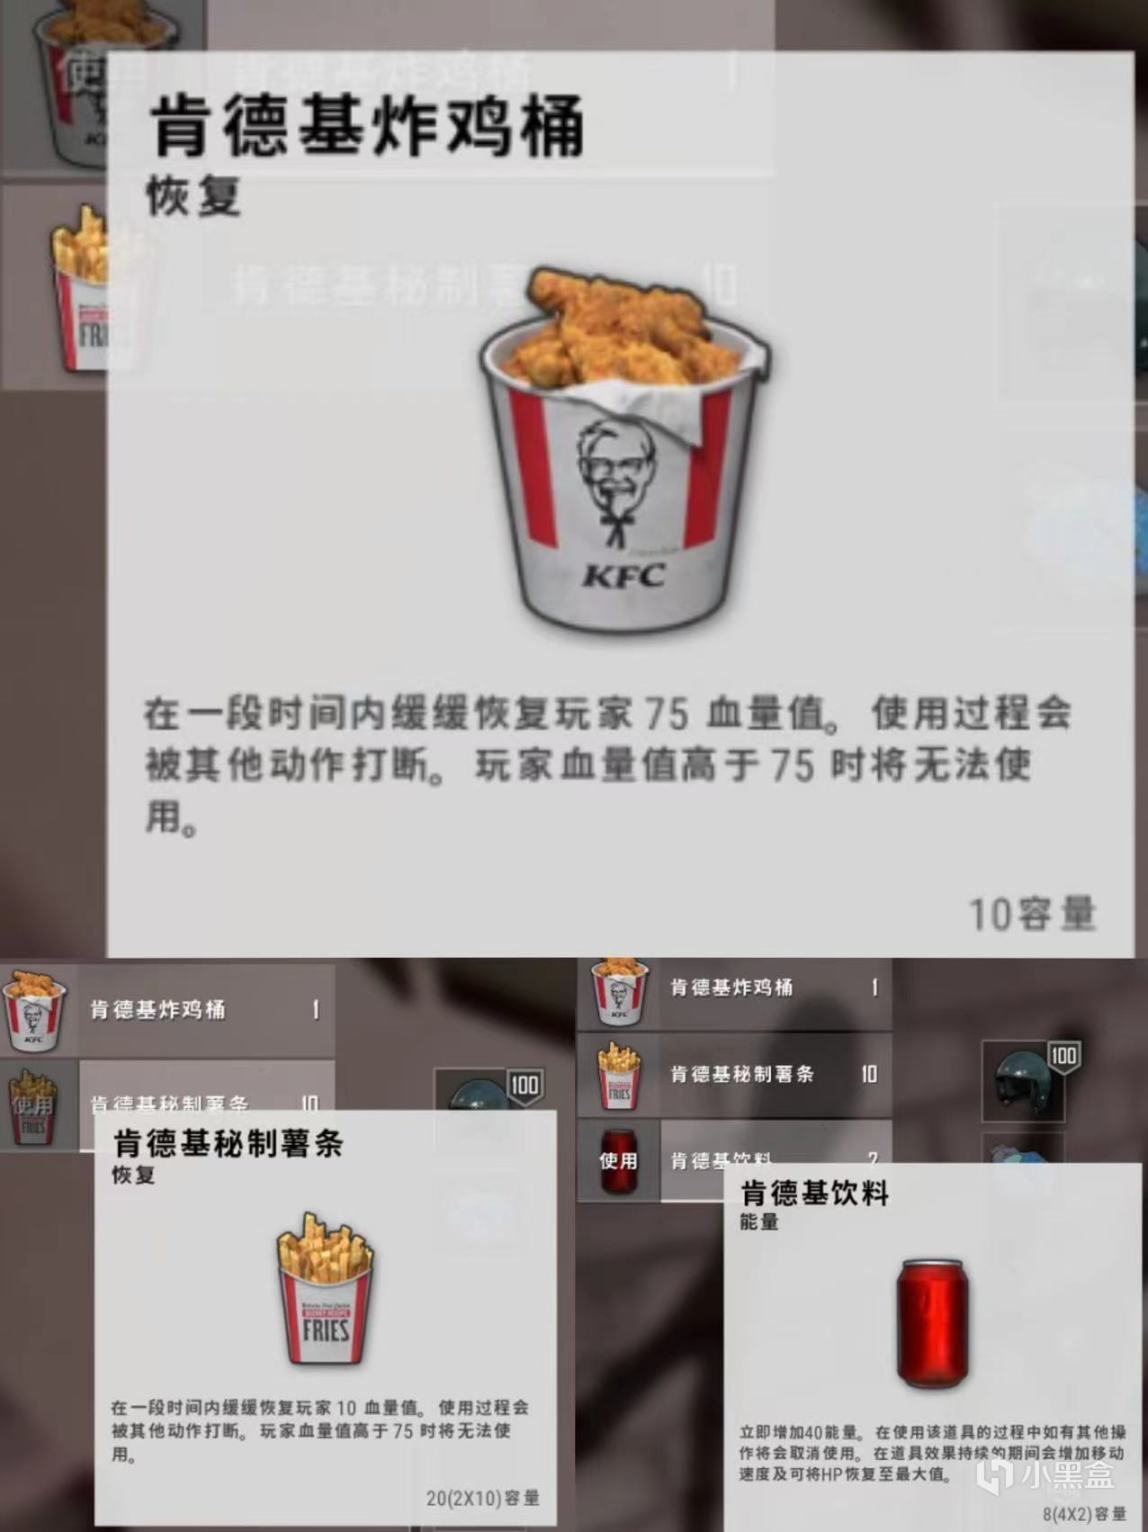 【绝地求生】KFC主题艾伦格即将上线//炸鸡/饮料一起炫！-第8张